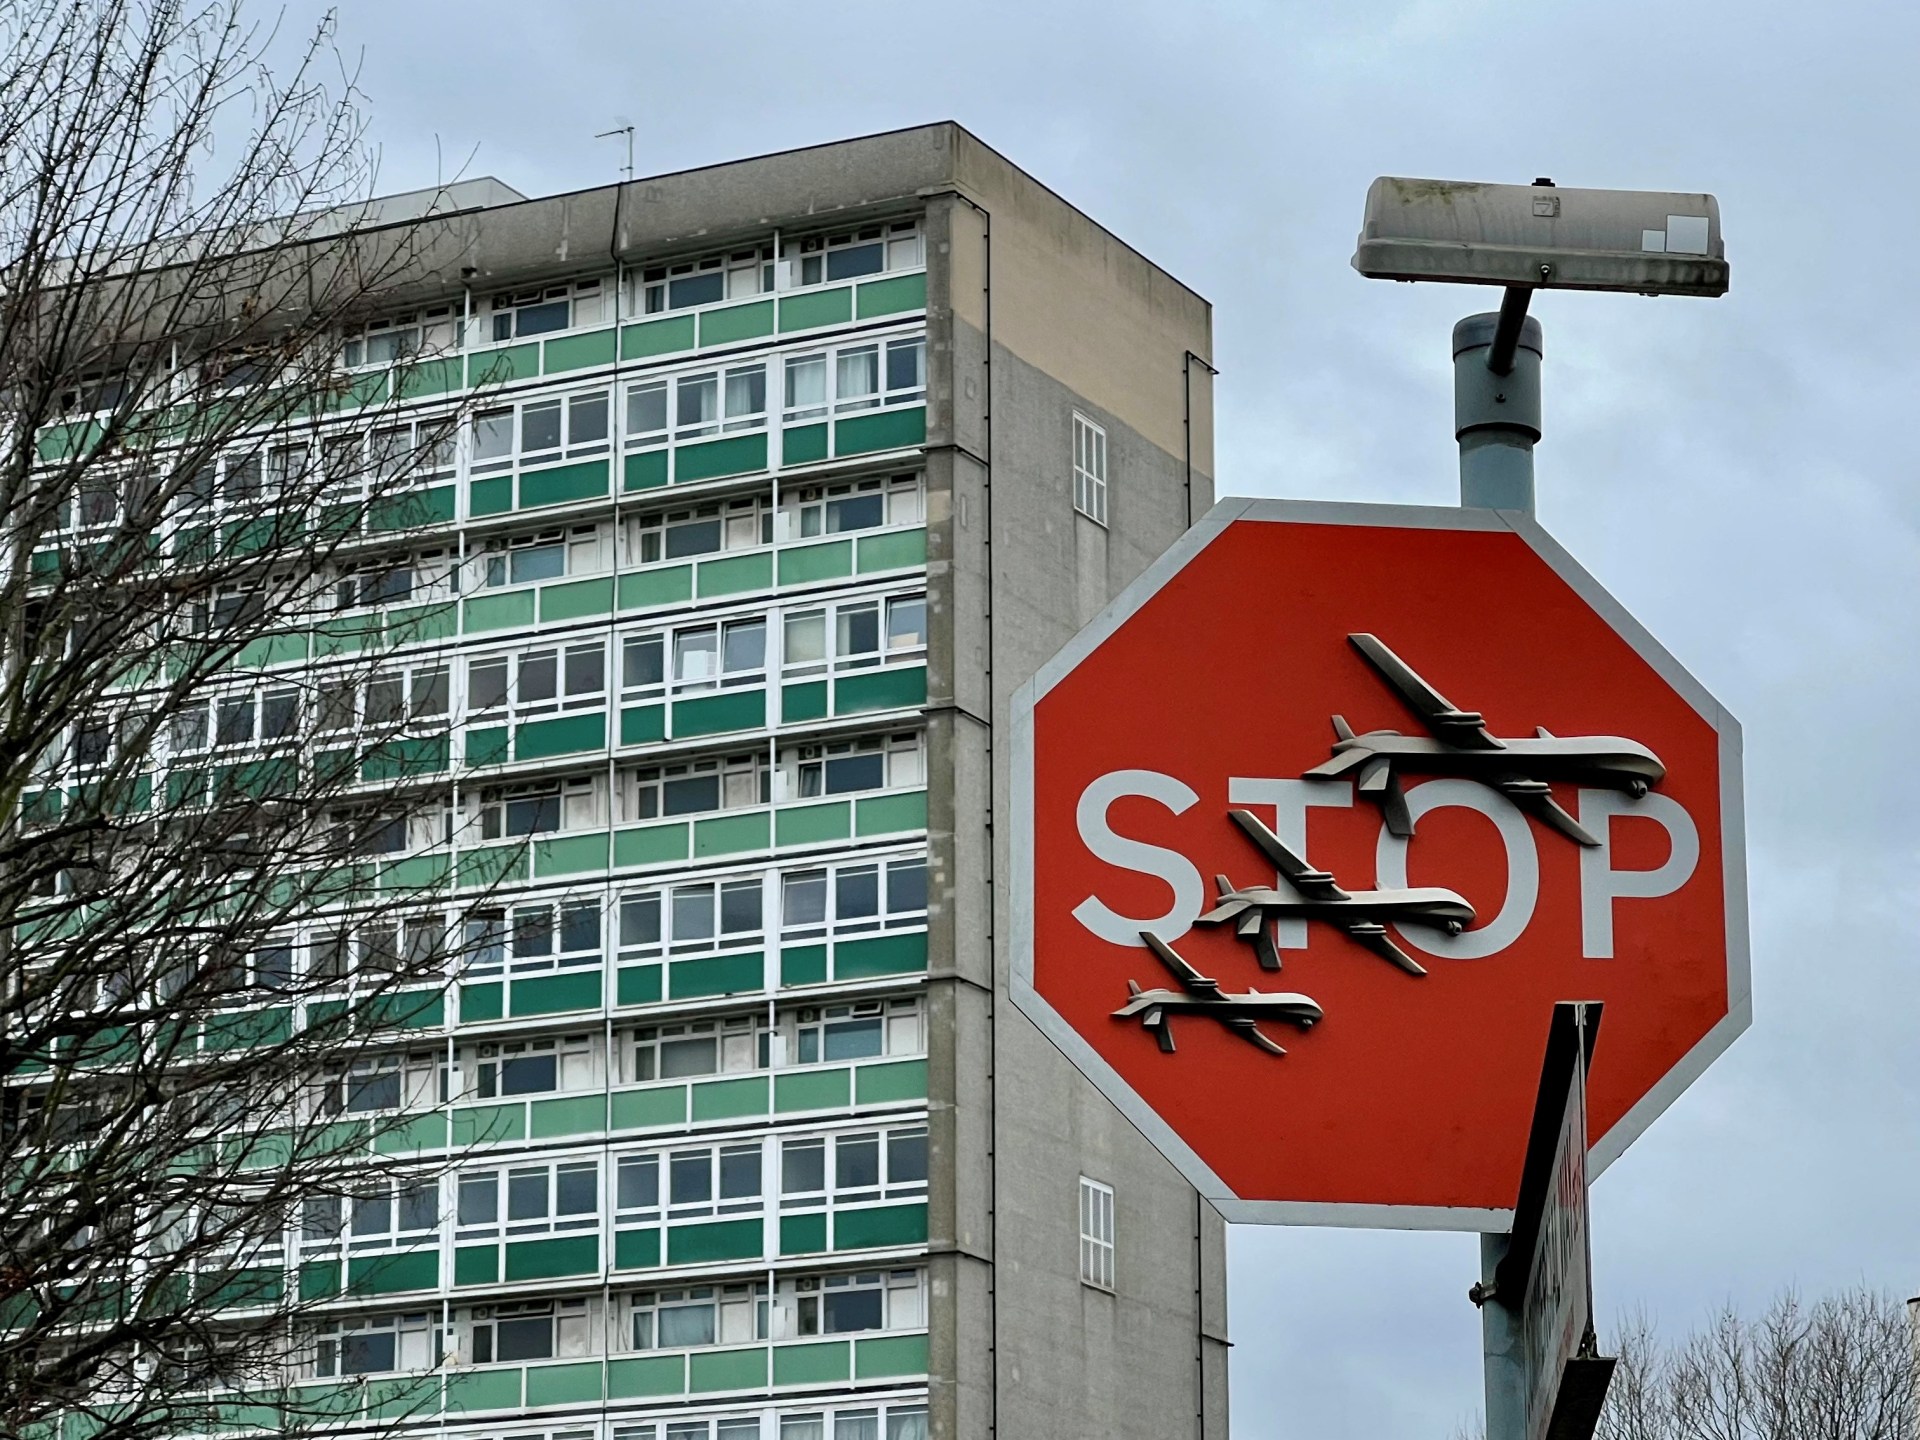 Британска полиција ухапсила мушкарца након што је Бенксијева уметничка дела украдена са лондонске улице |  Вести из уметности и културе